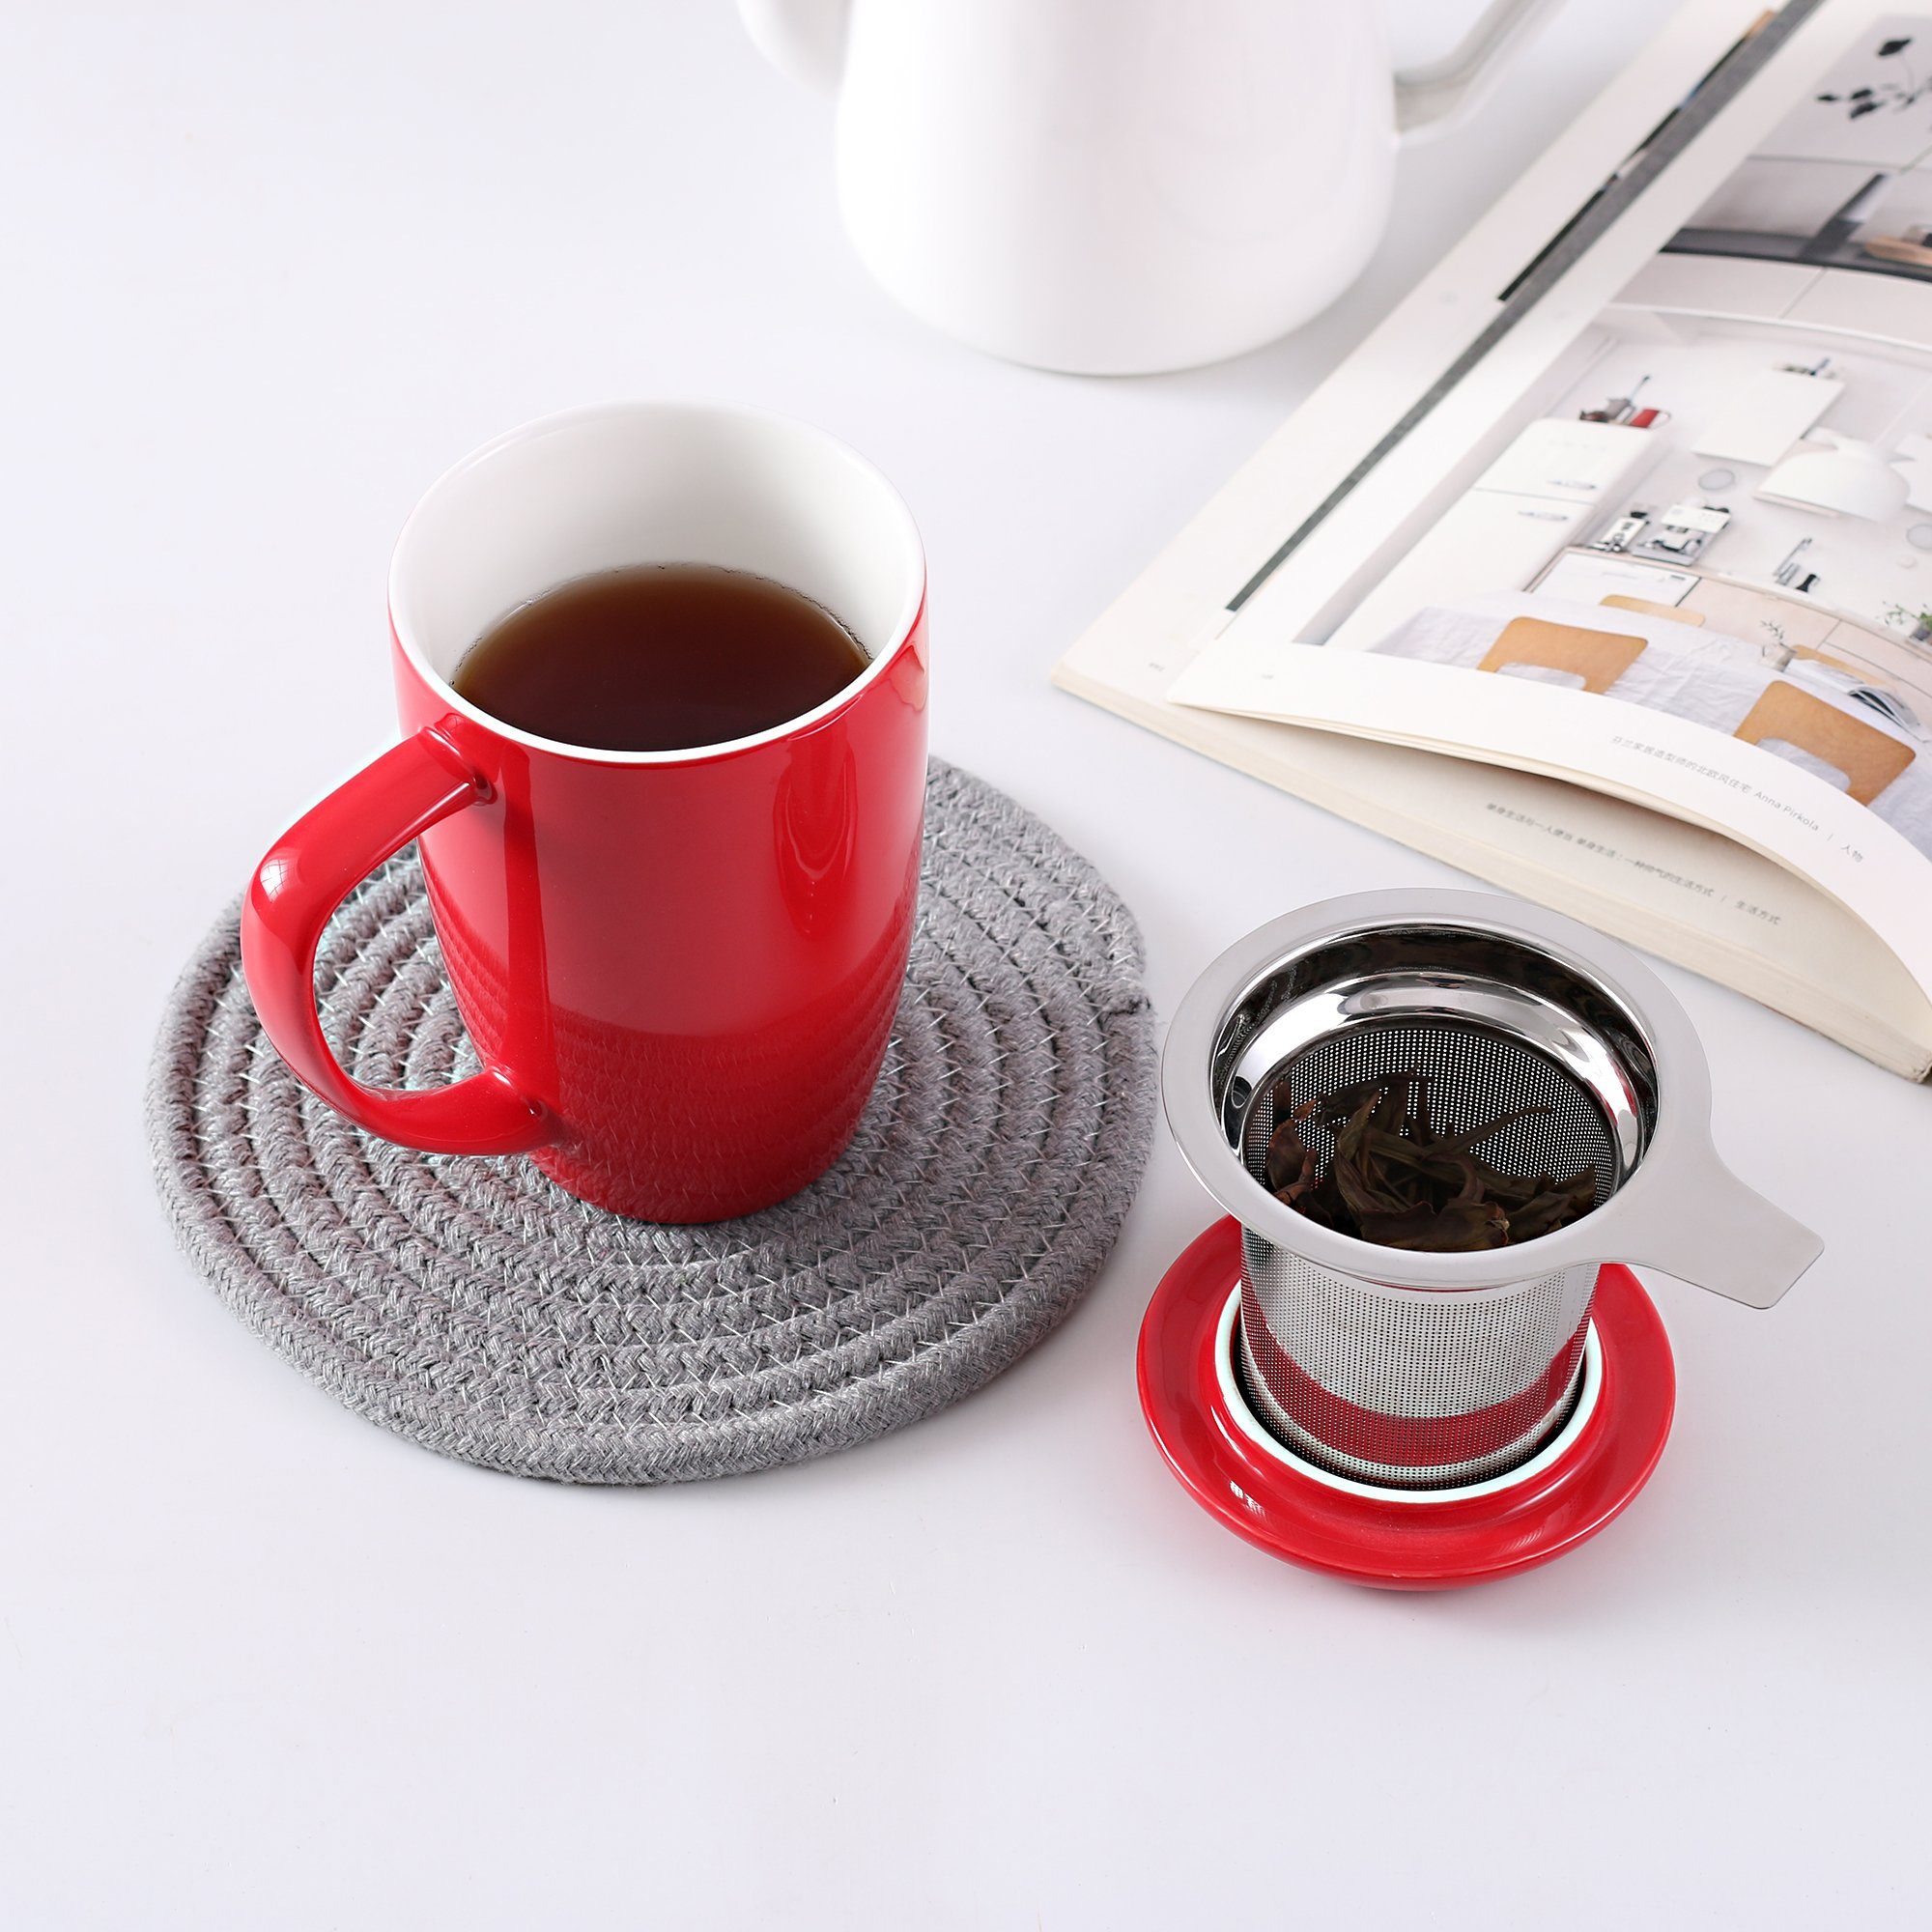 LOVECASA Tasse, Porzellan, Teebecher Kaffeebecher aus Rot Porzellan